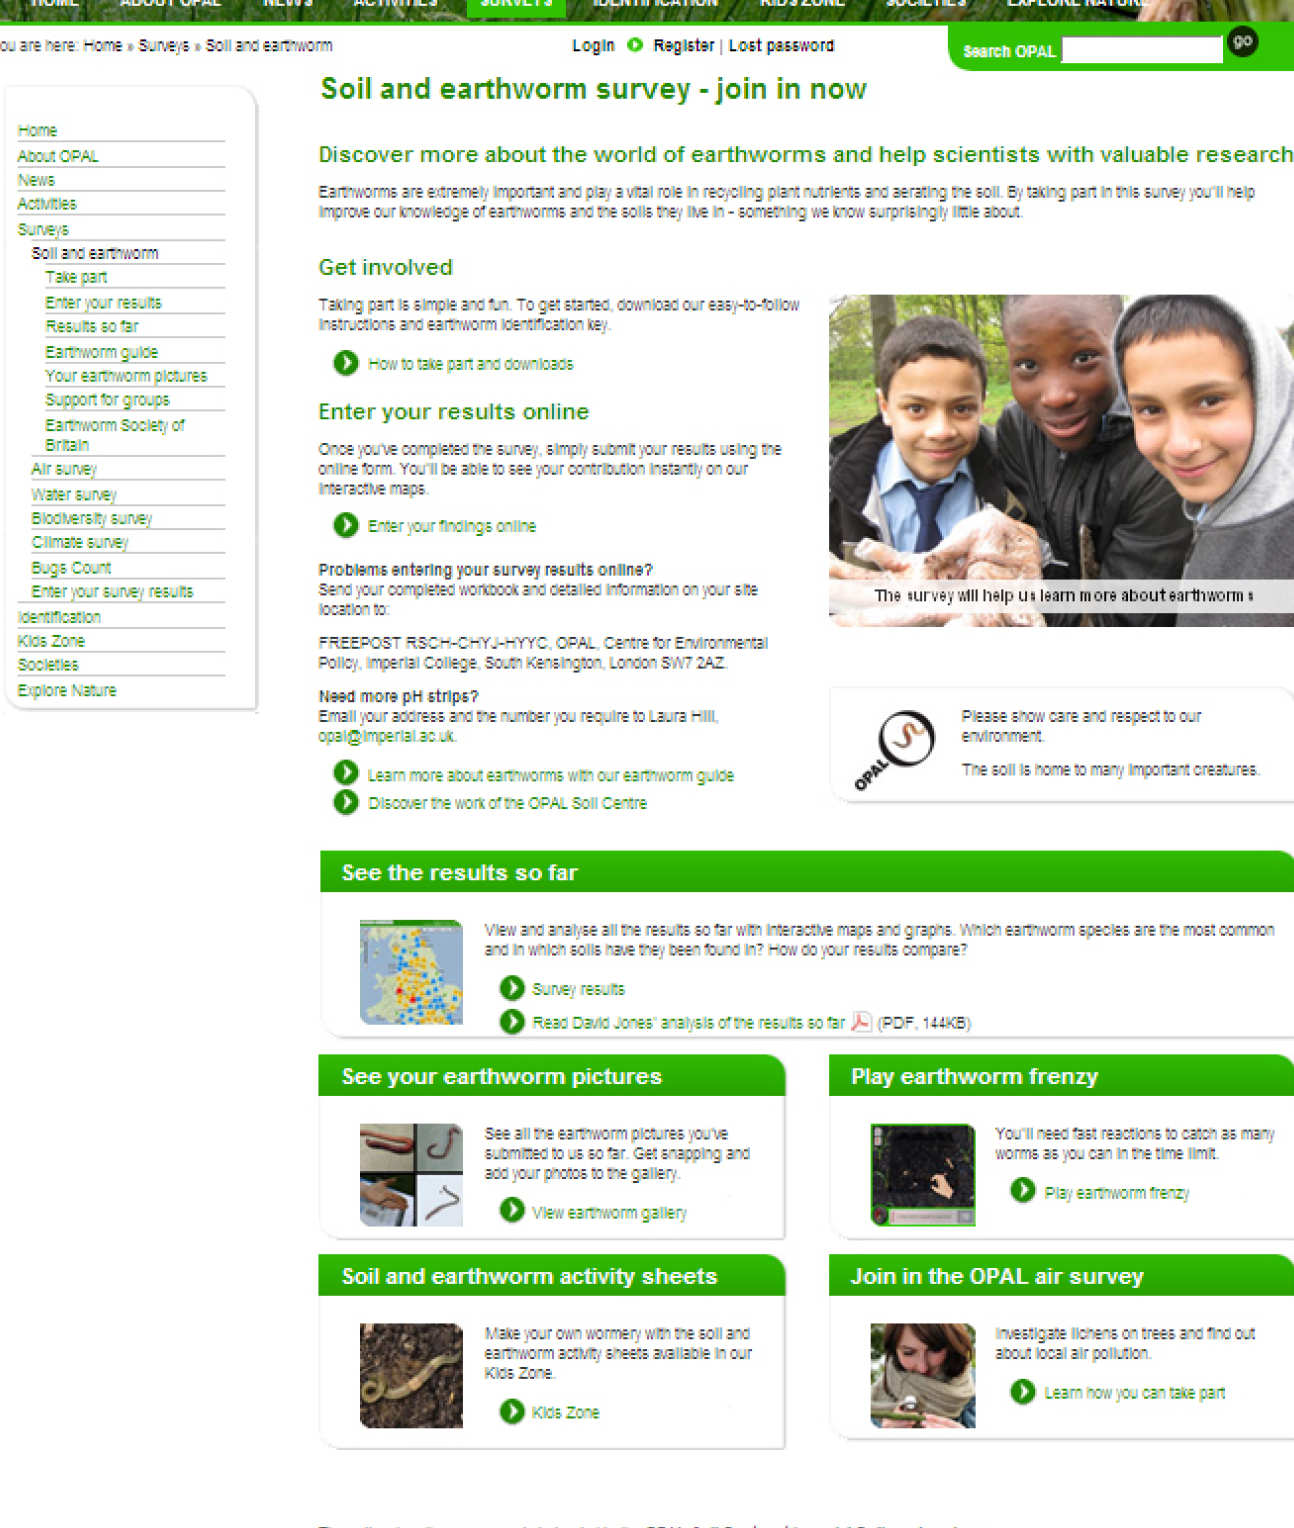 Soil Centre Project Pages on Web Portal